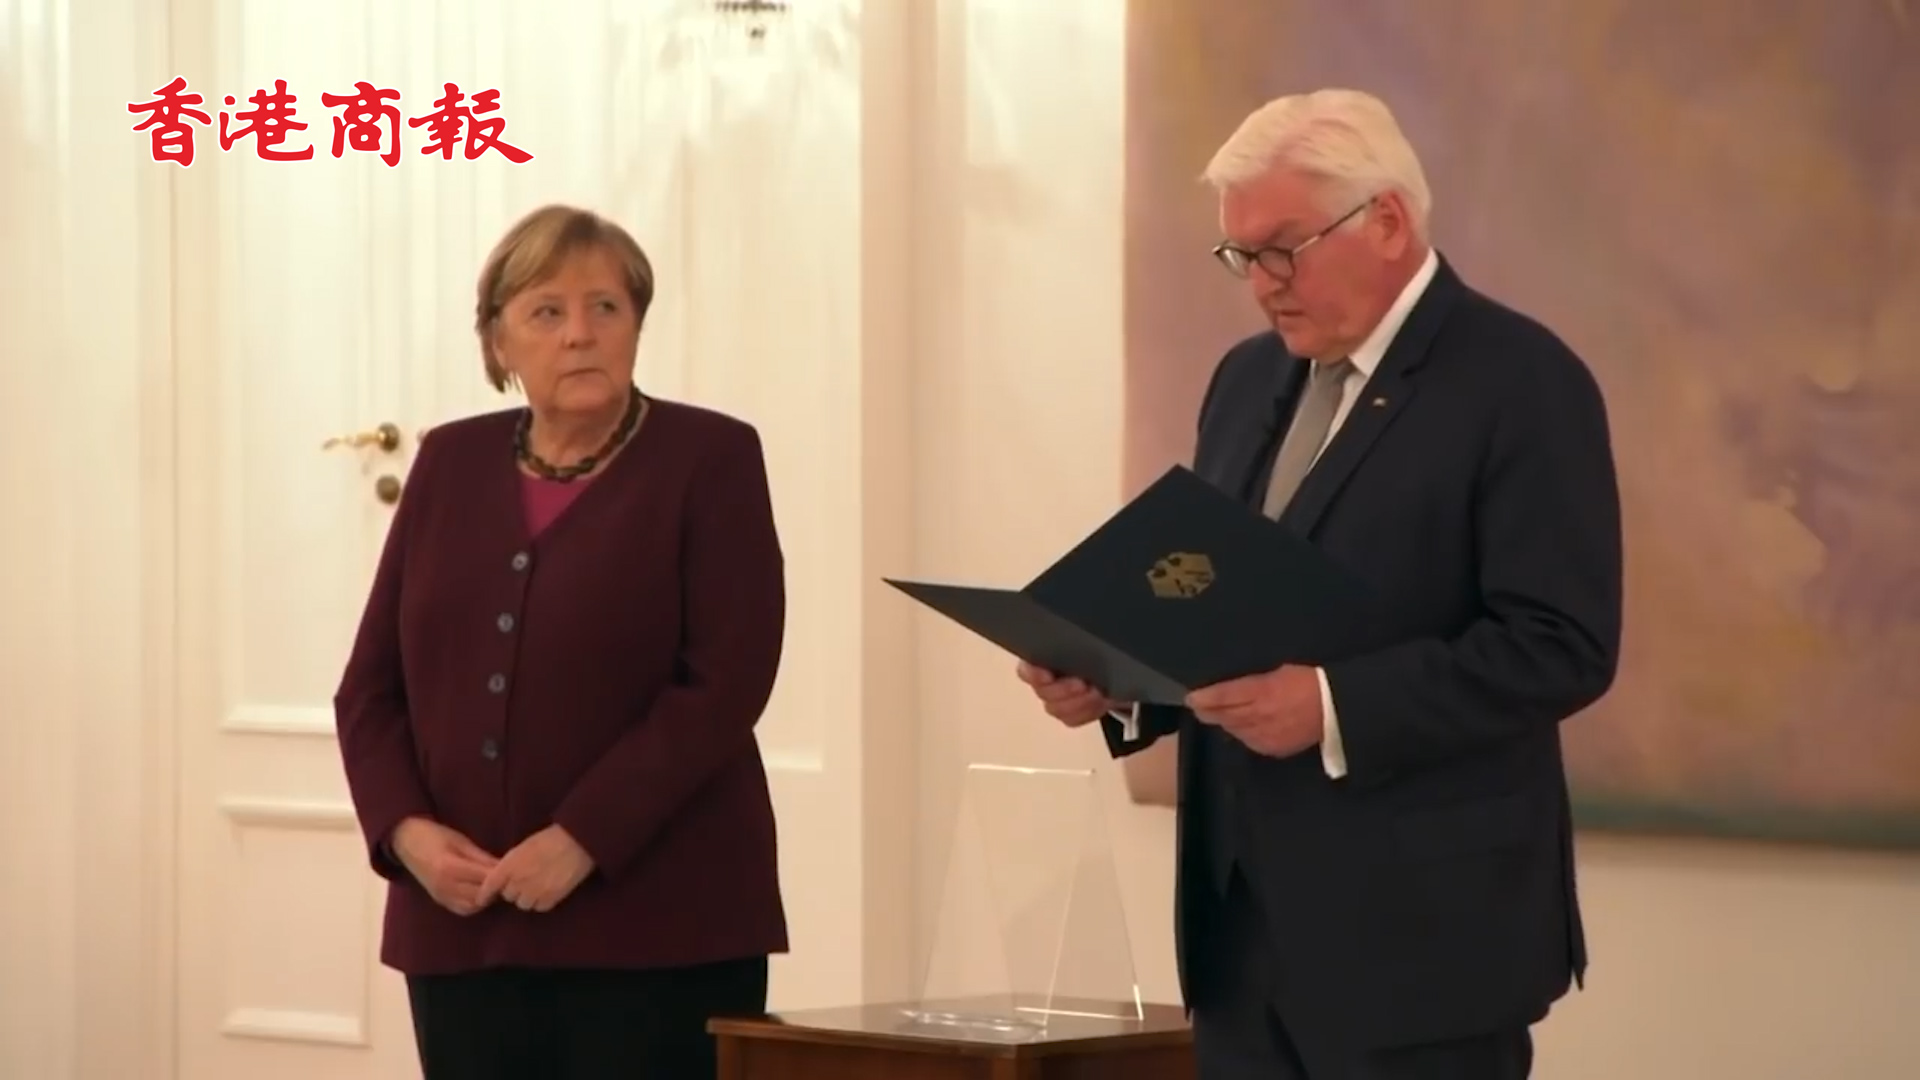 有片丨接過德國總統交予的總理任期結束通知 默克爾忘記合影